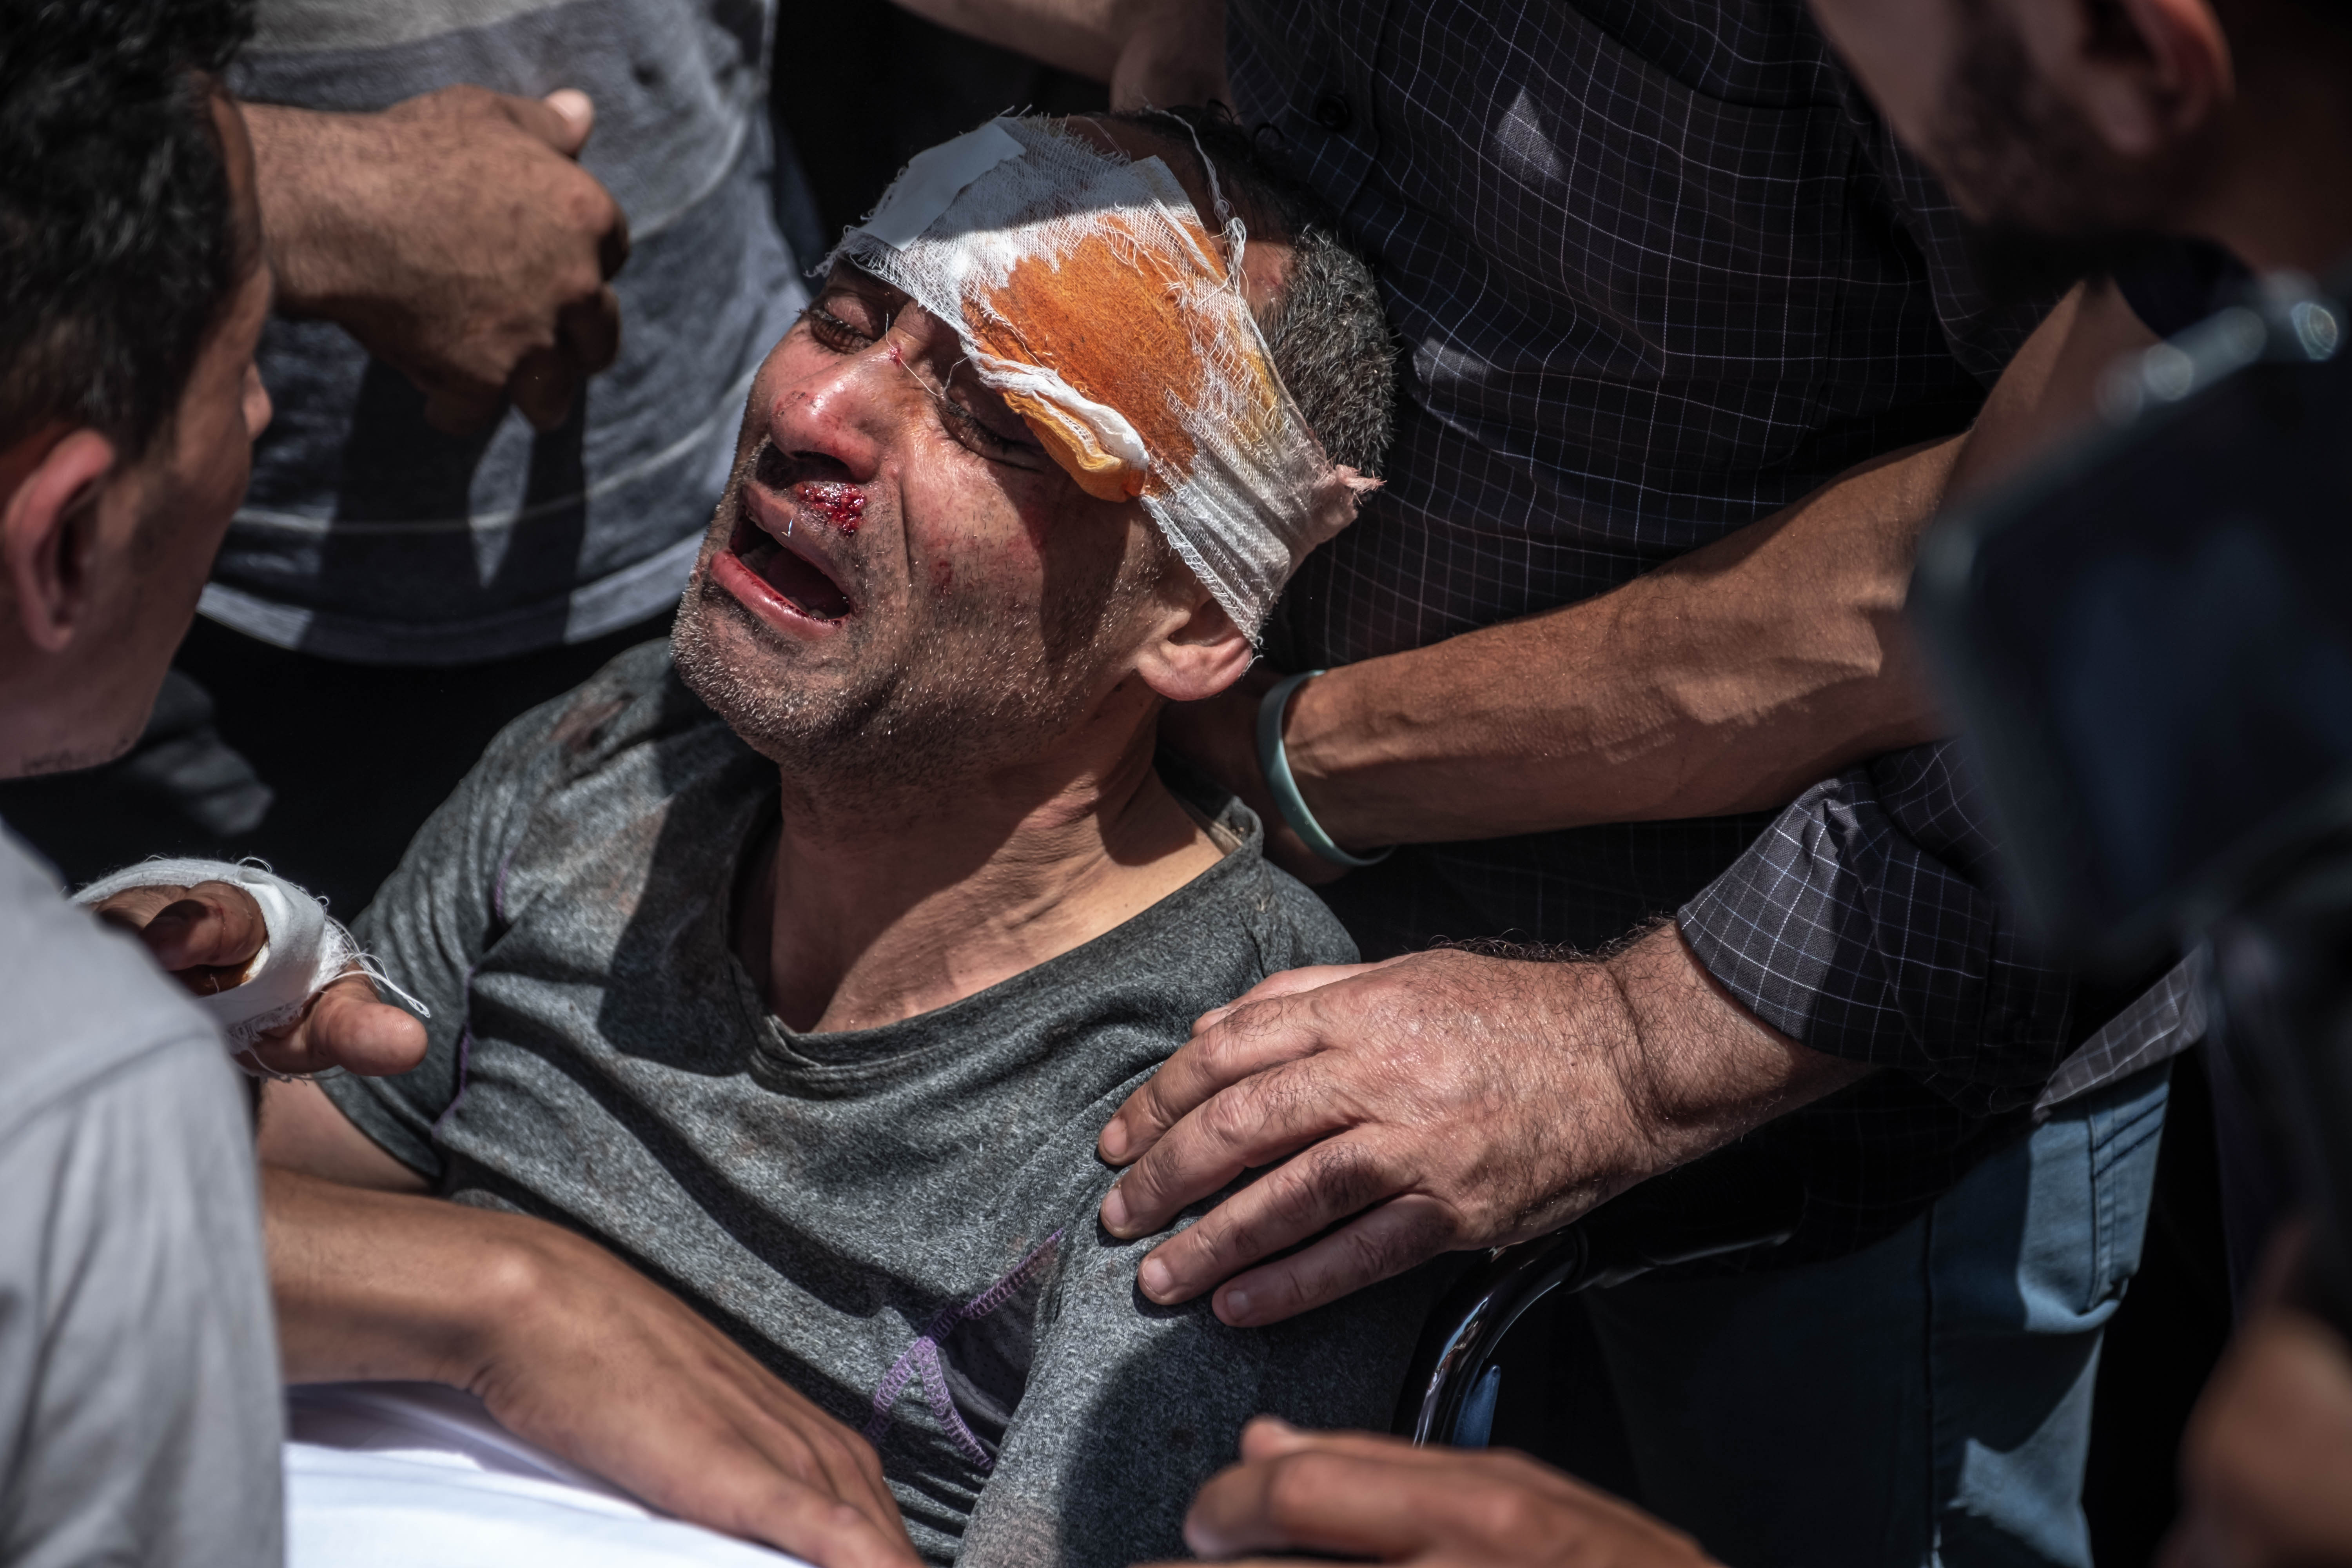 Seorang lelaki Palestina yang selamat setelah apartemennya dibom jet tempur Israel, menangisi anaknya yang tewas. Foto oleh Fatima Shbair/Getty Images